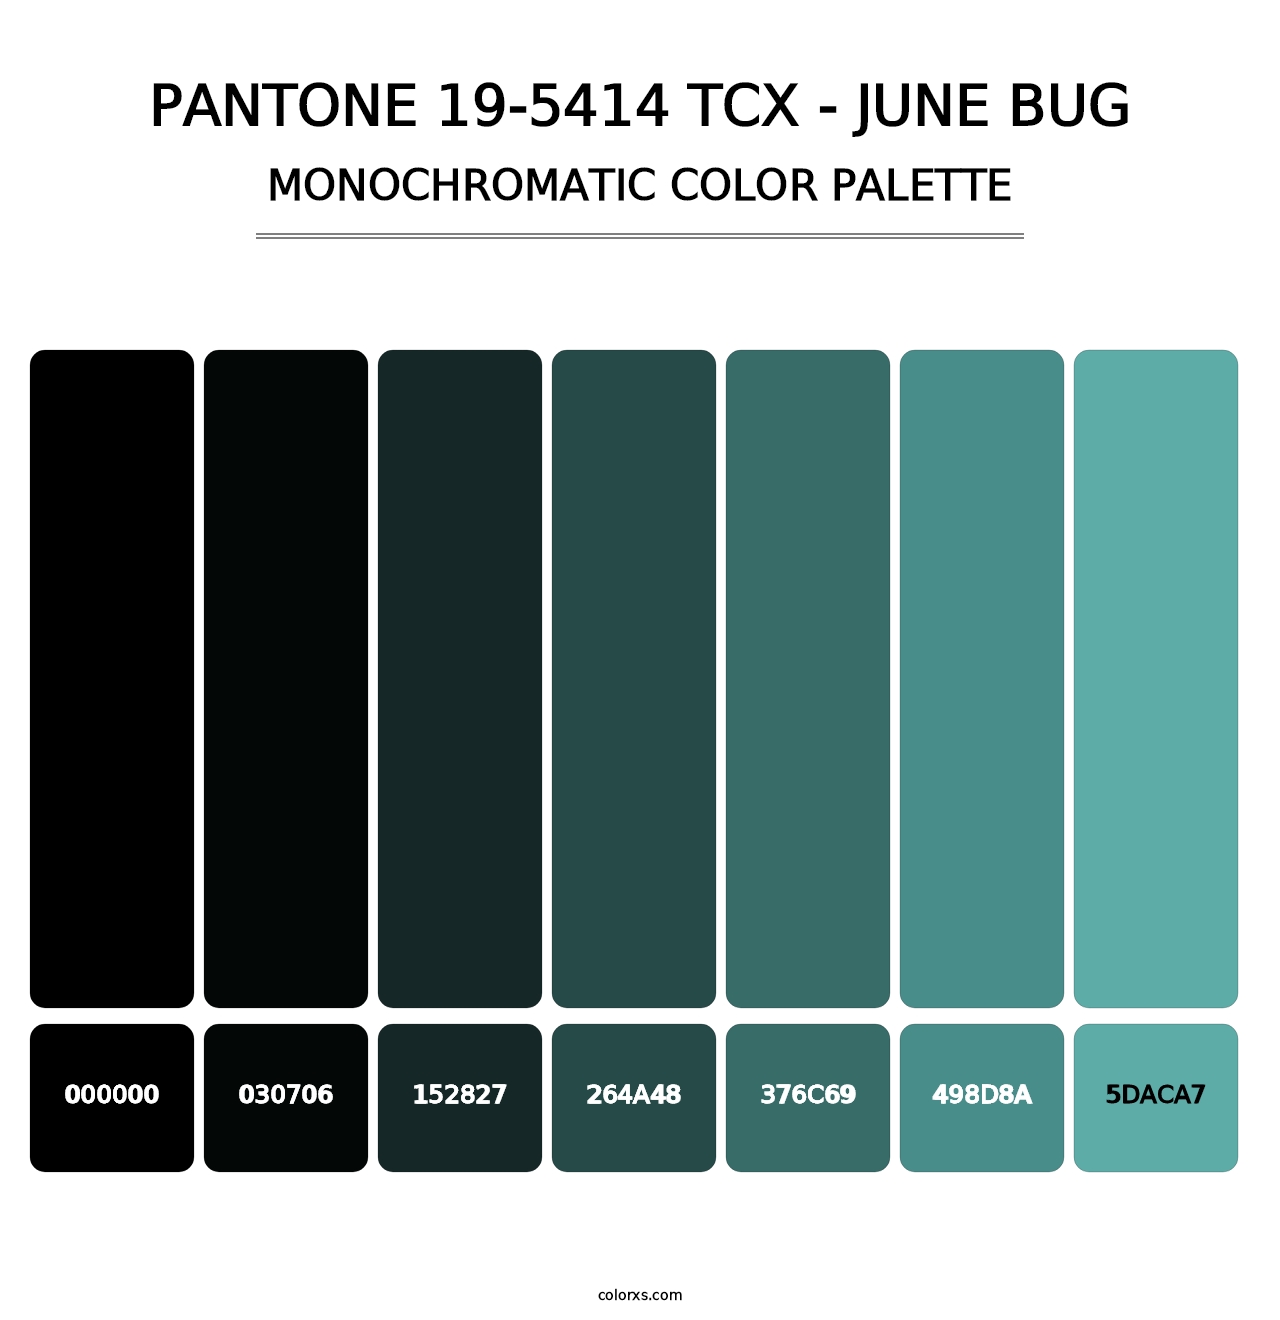 PANTONE 19-5414 TCX - June Bug - Monochromatic Color Palette